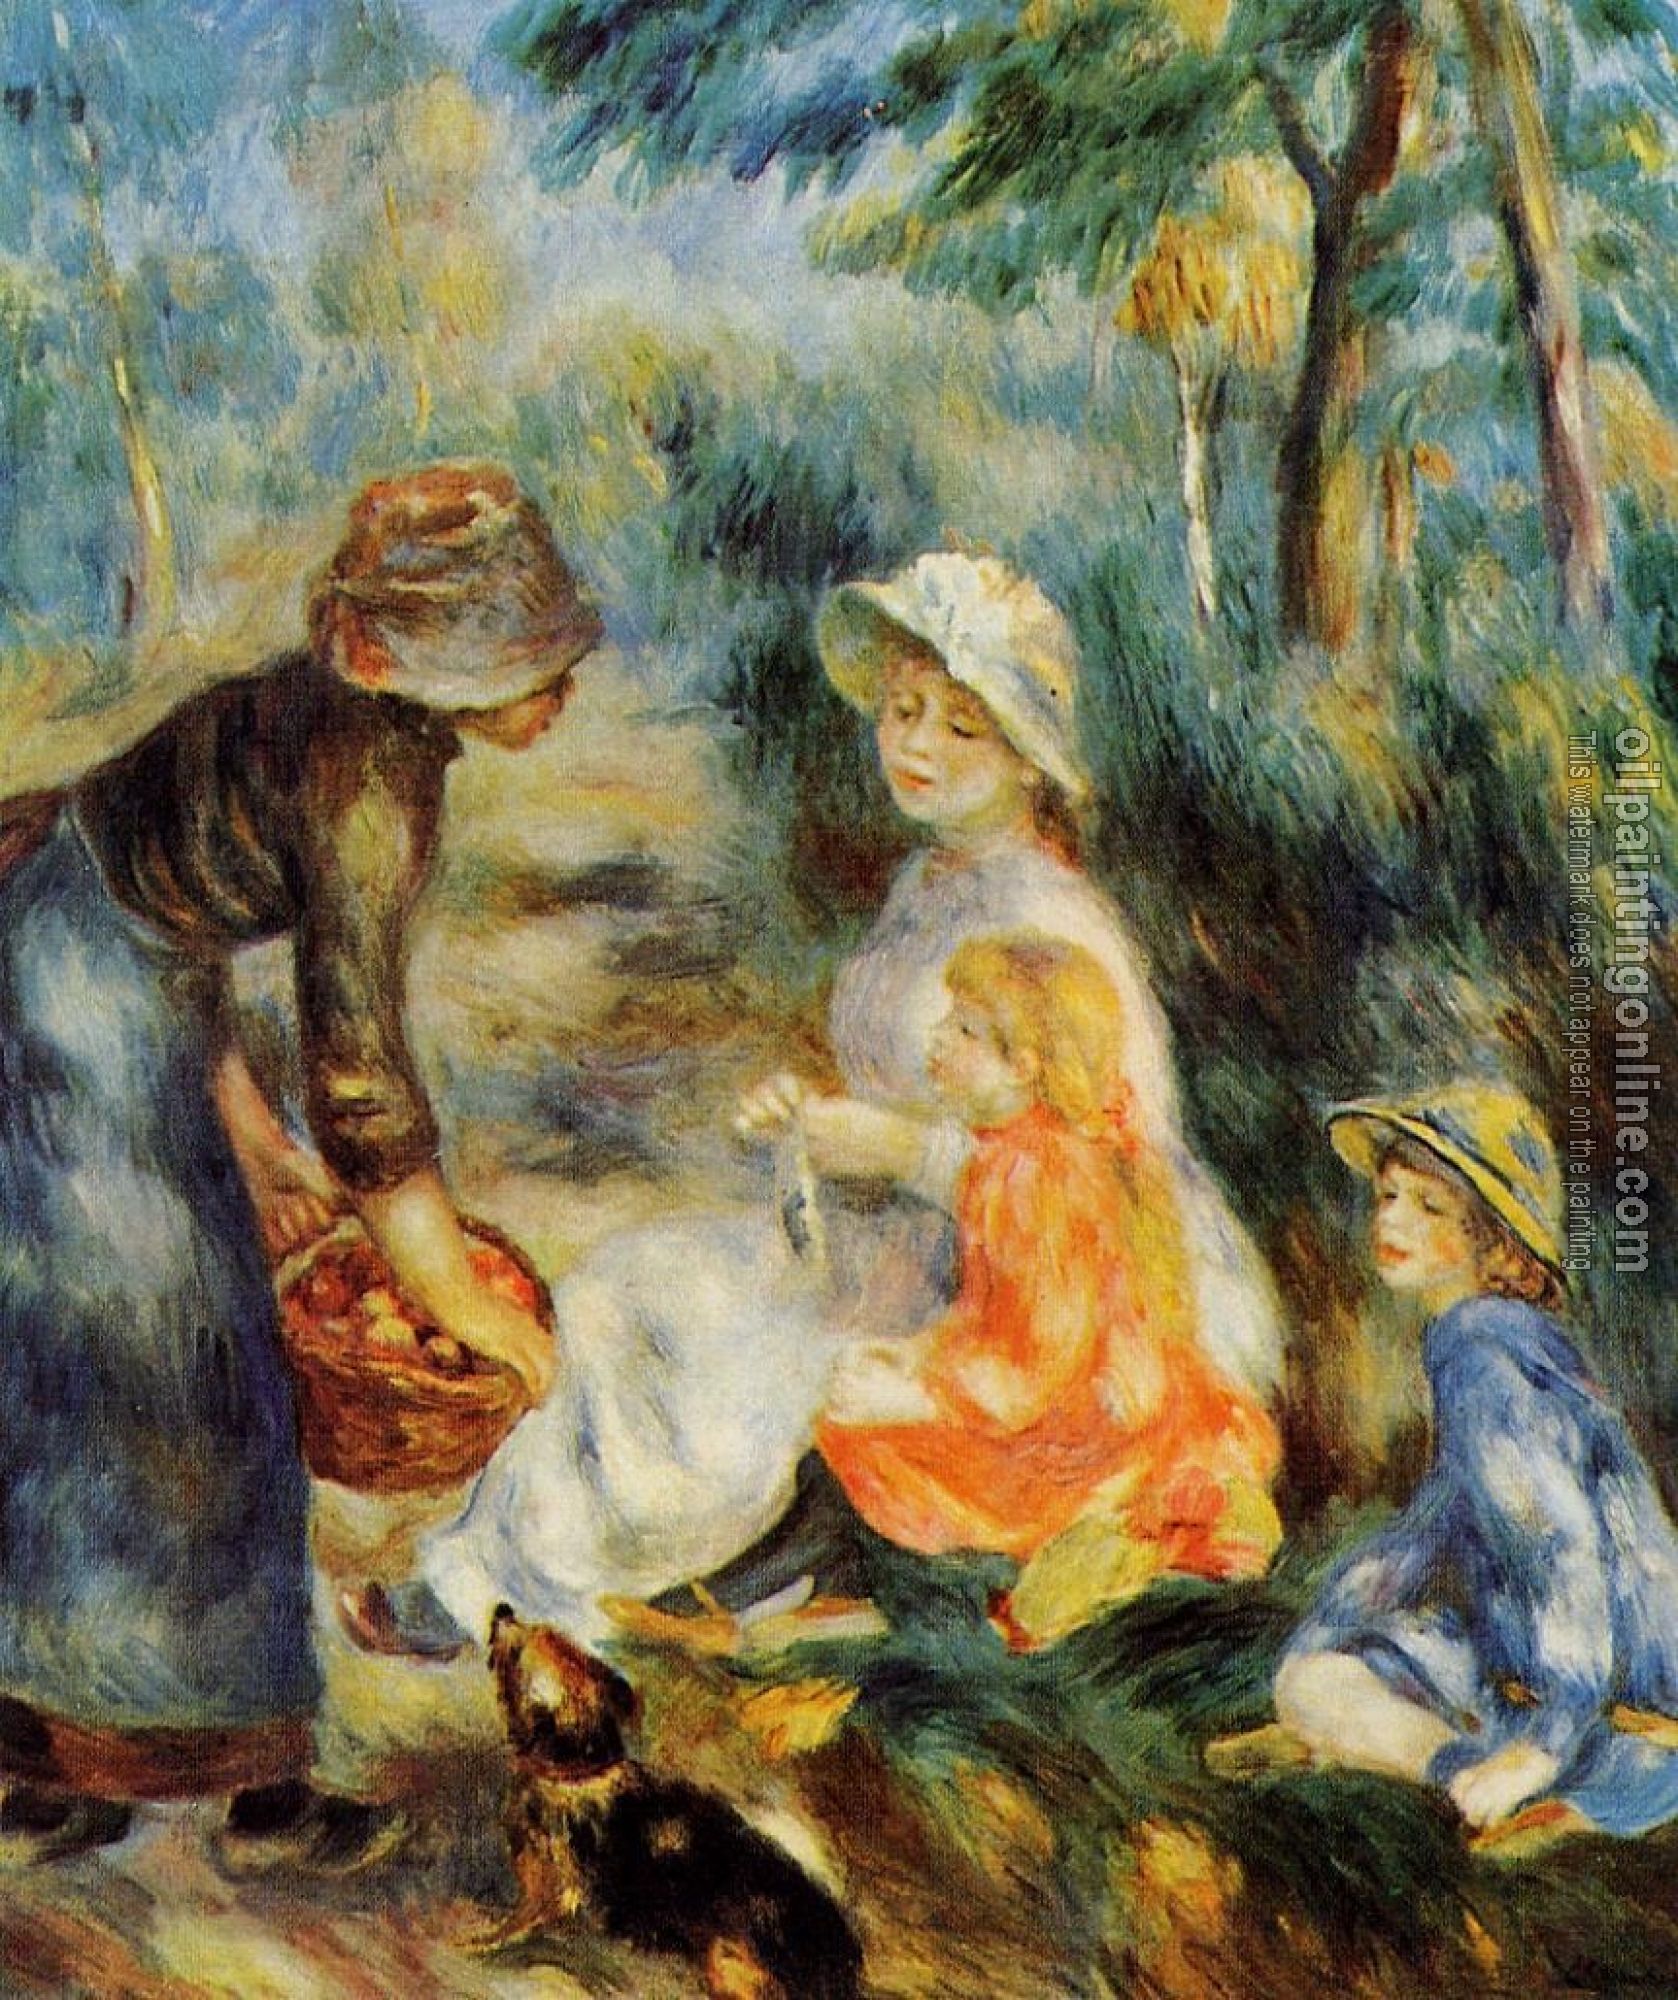 Renoir, Pierre Auguste - The Apple Seller